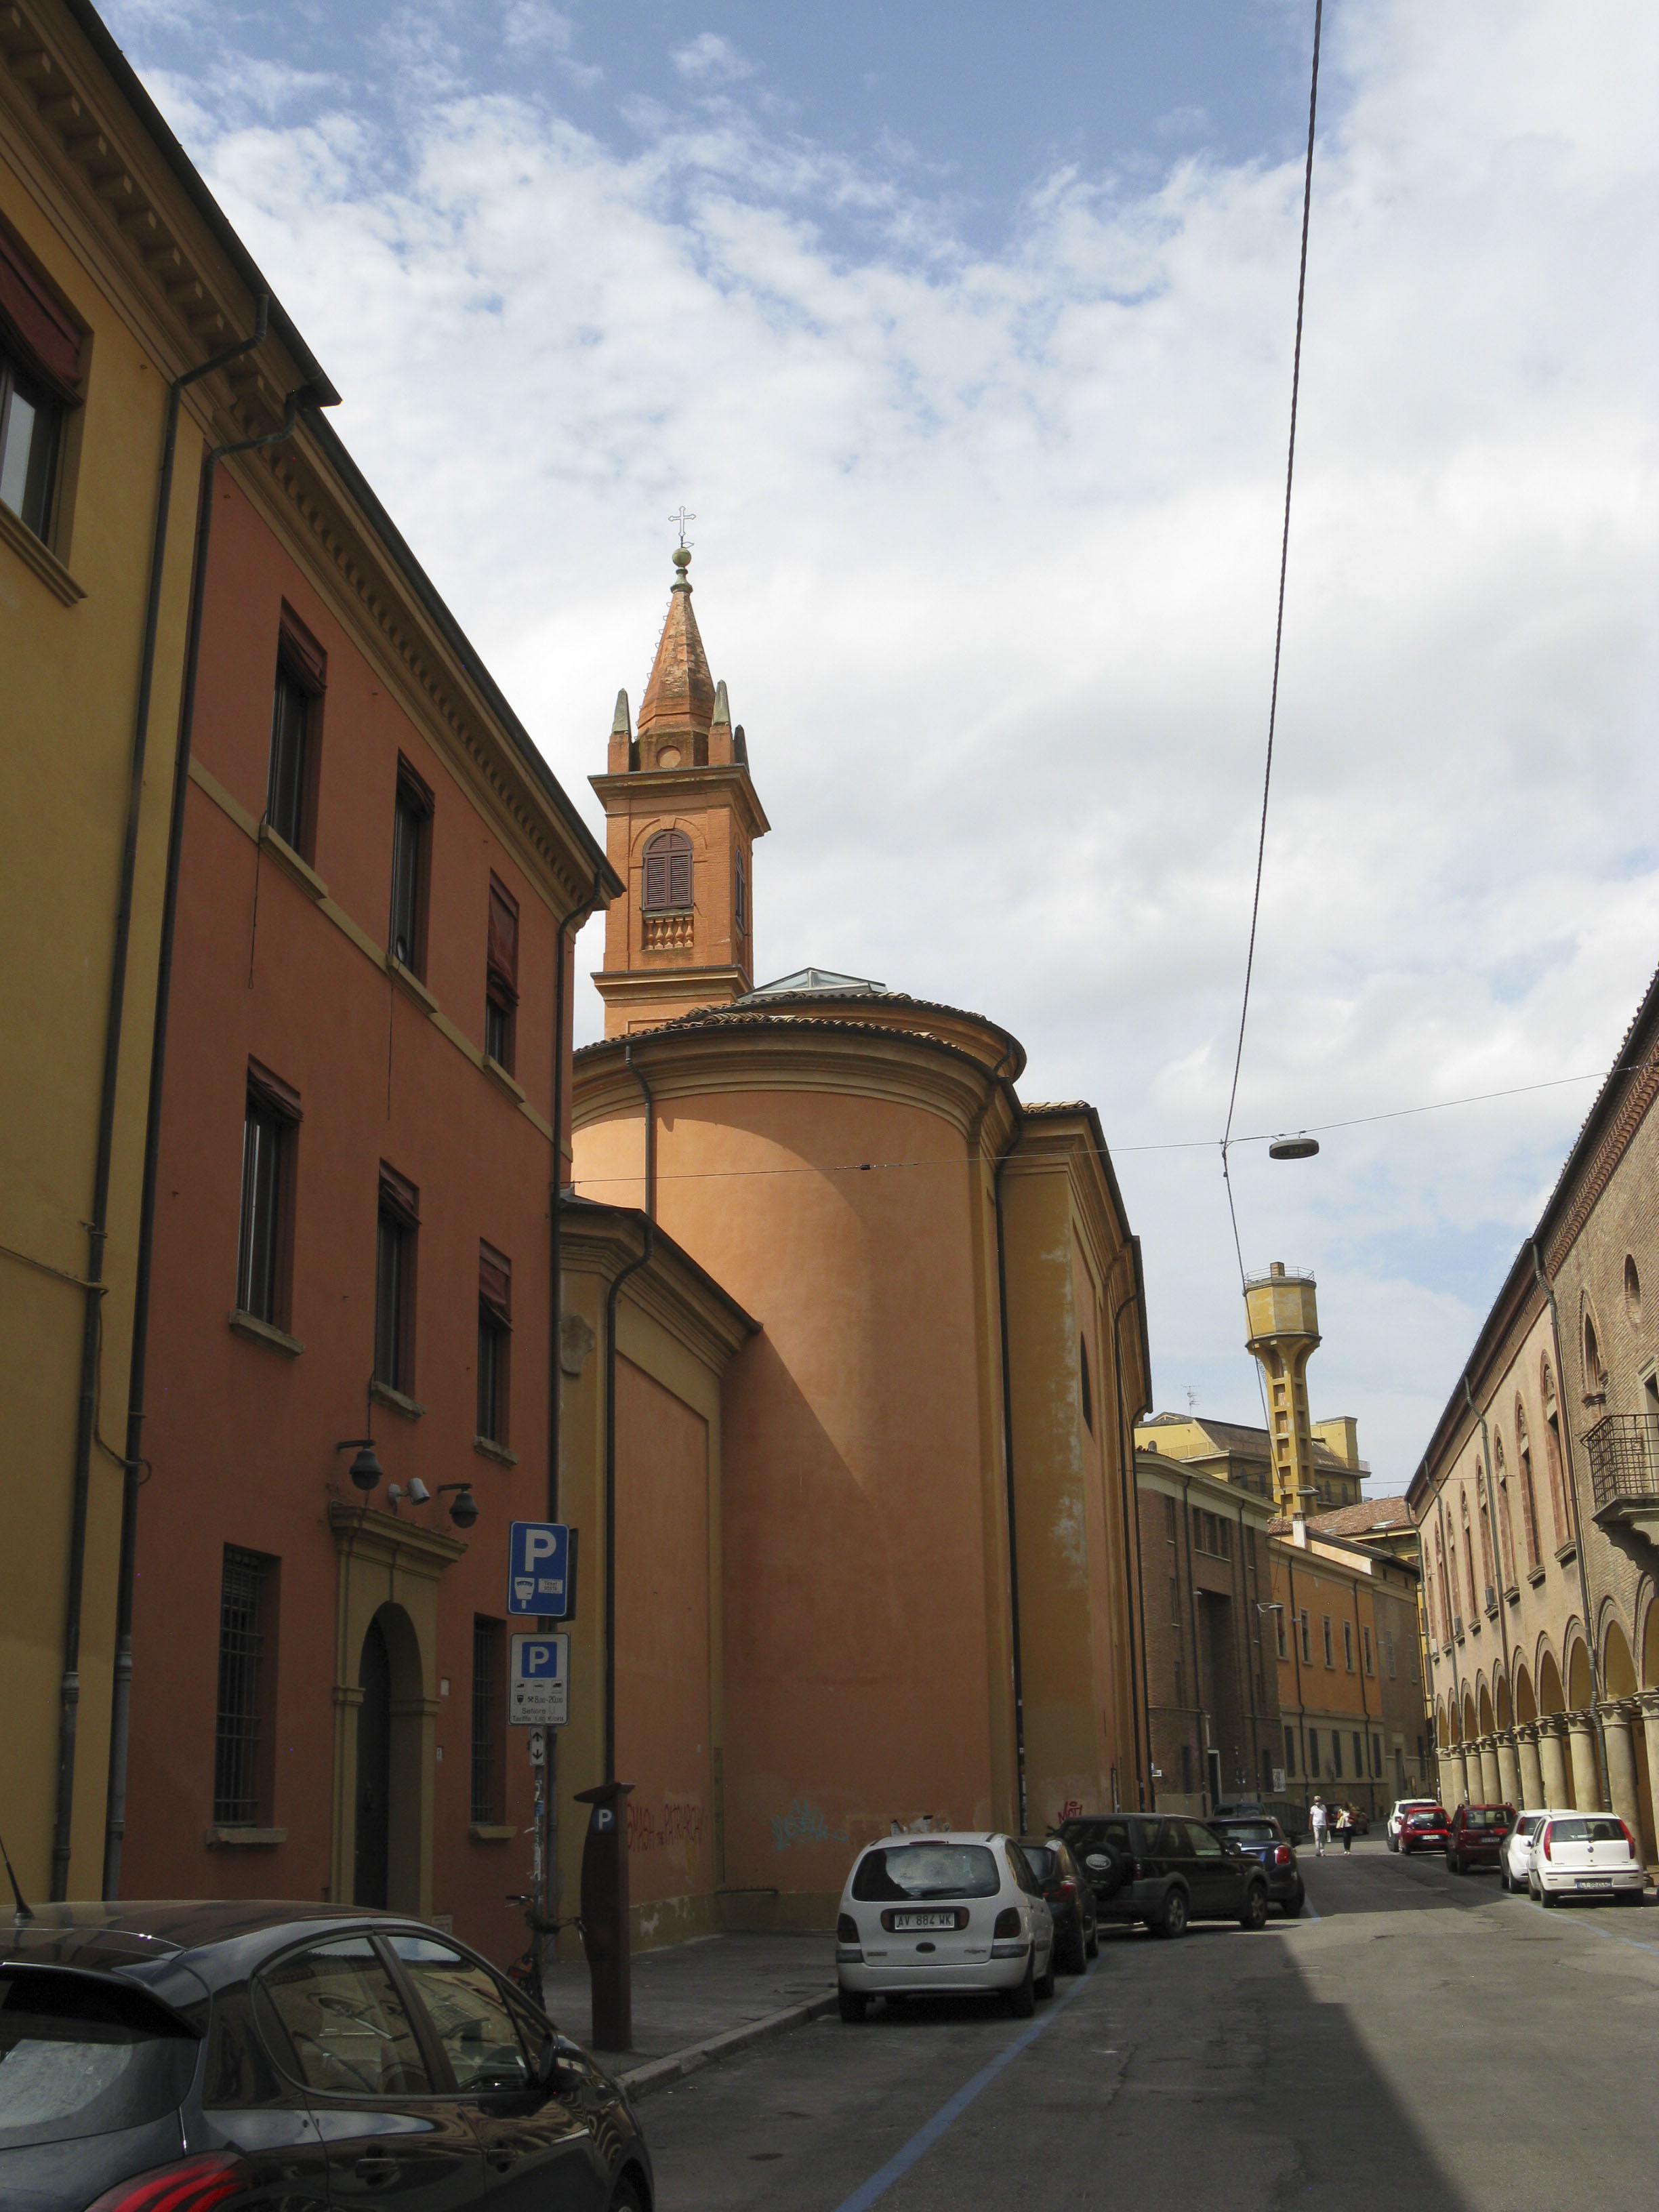 Campanile Chiesa di S. Sigismondo (campanile) - Bologna (BO) 